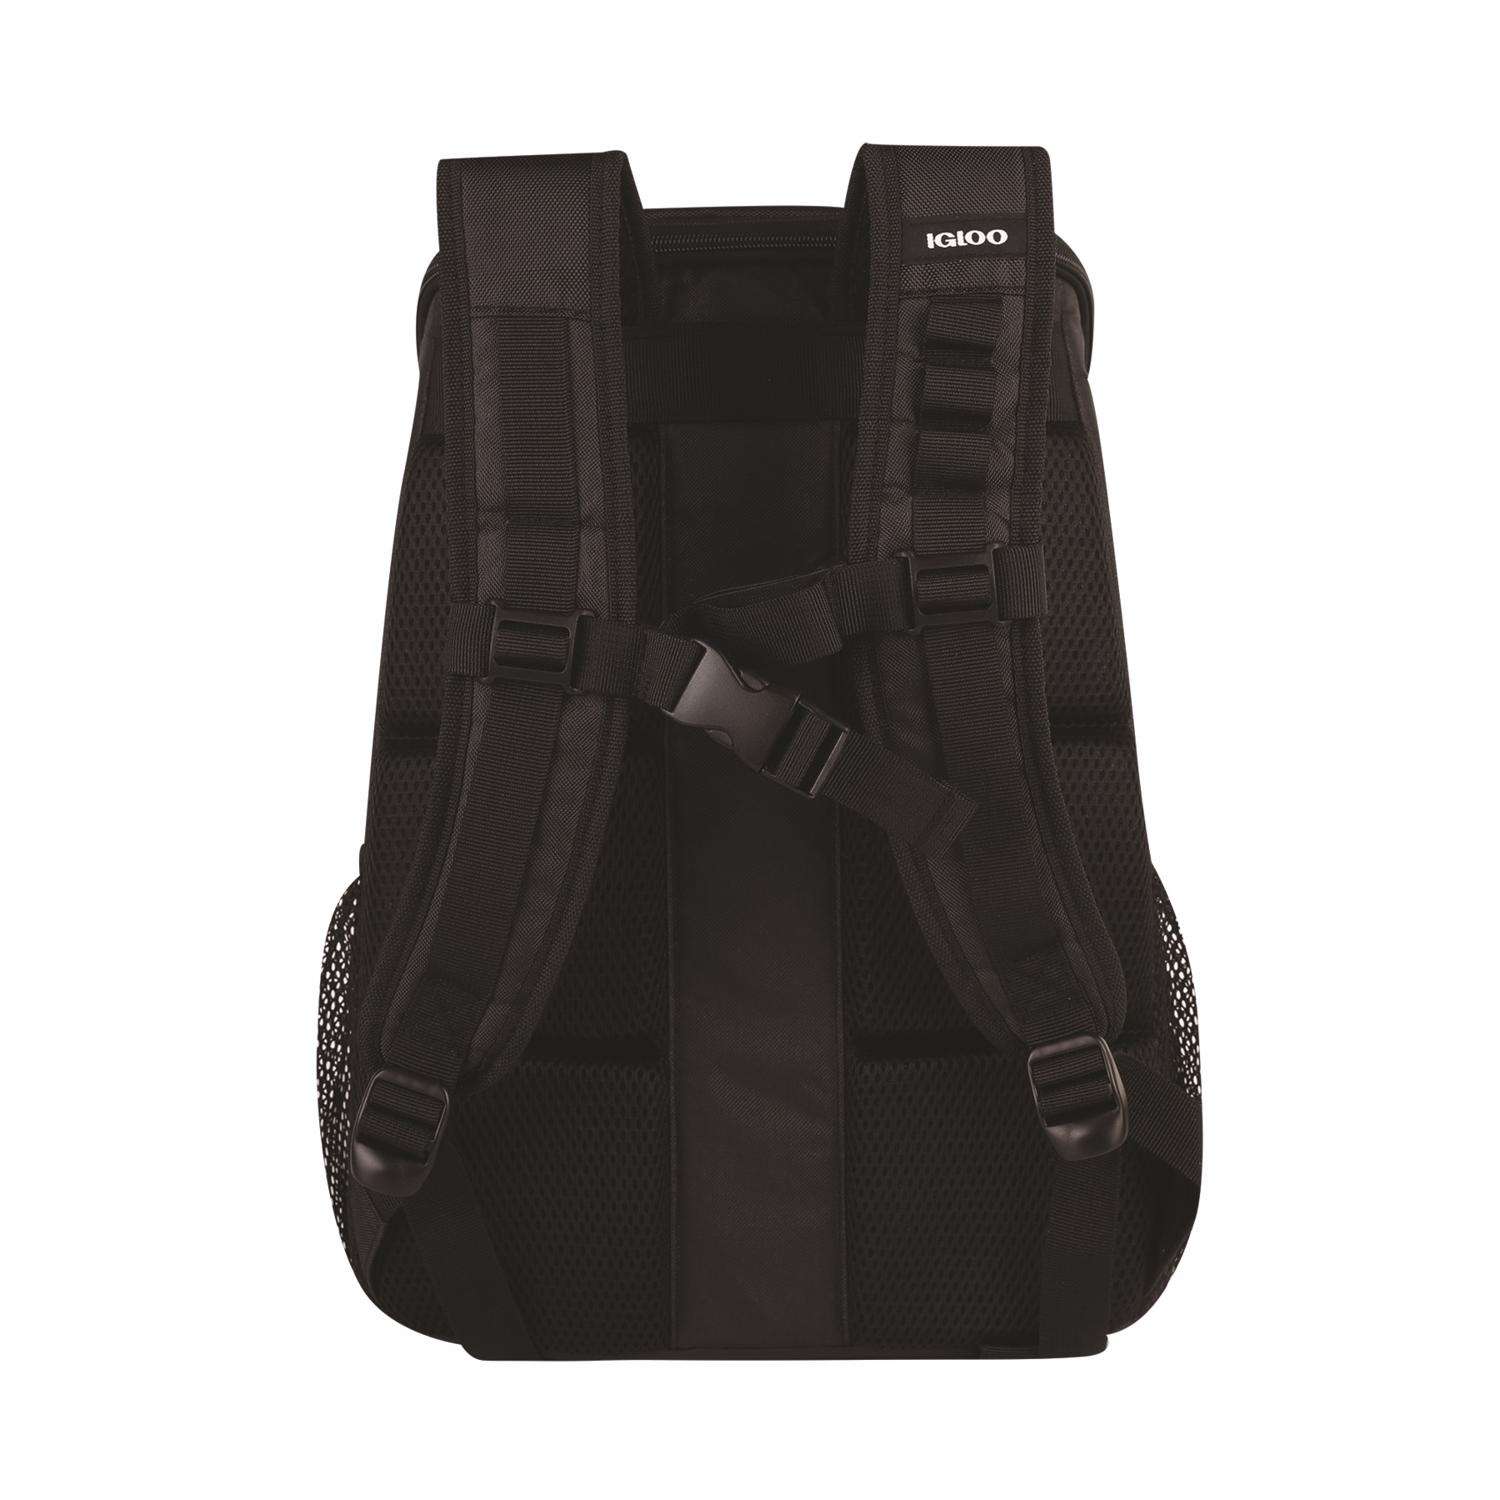 Igloo Backpack Polyester Cooler, Black